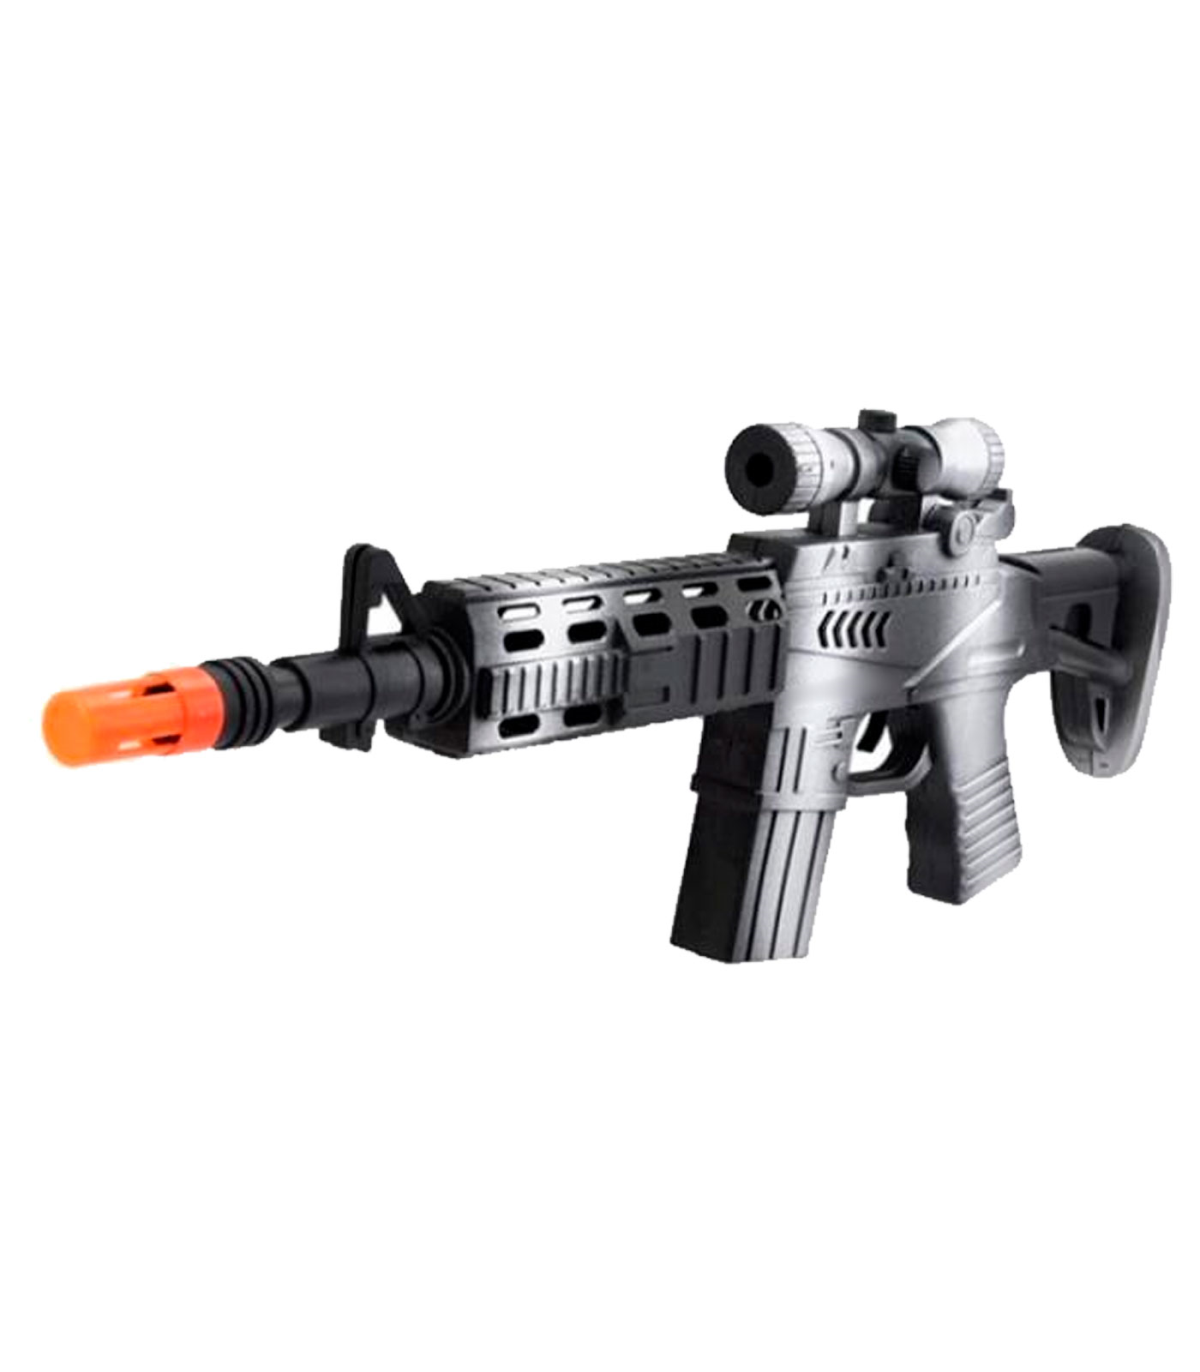 Tradineur - Metralleta, fusil de asalto de juguete con sonido por